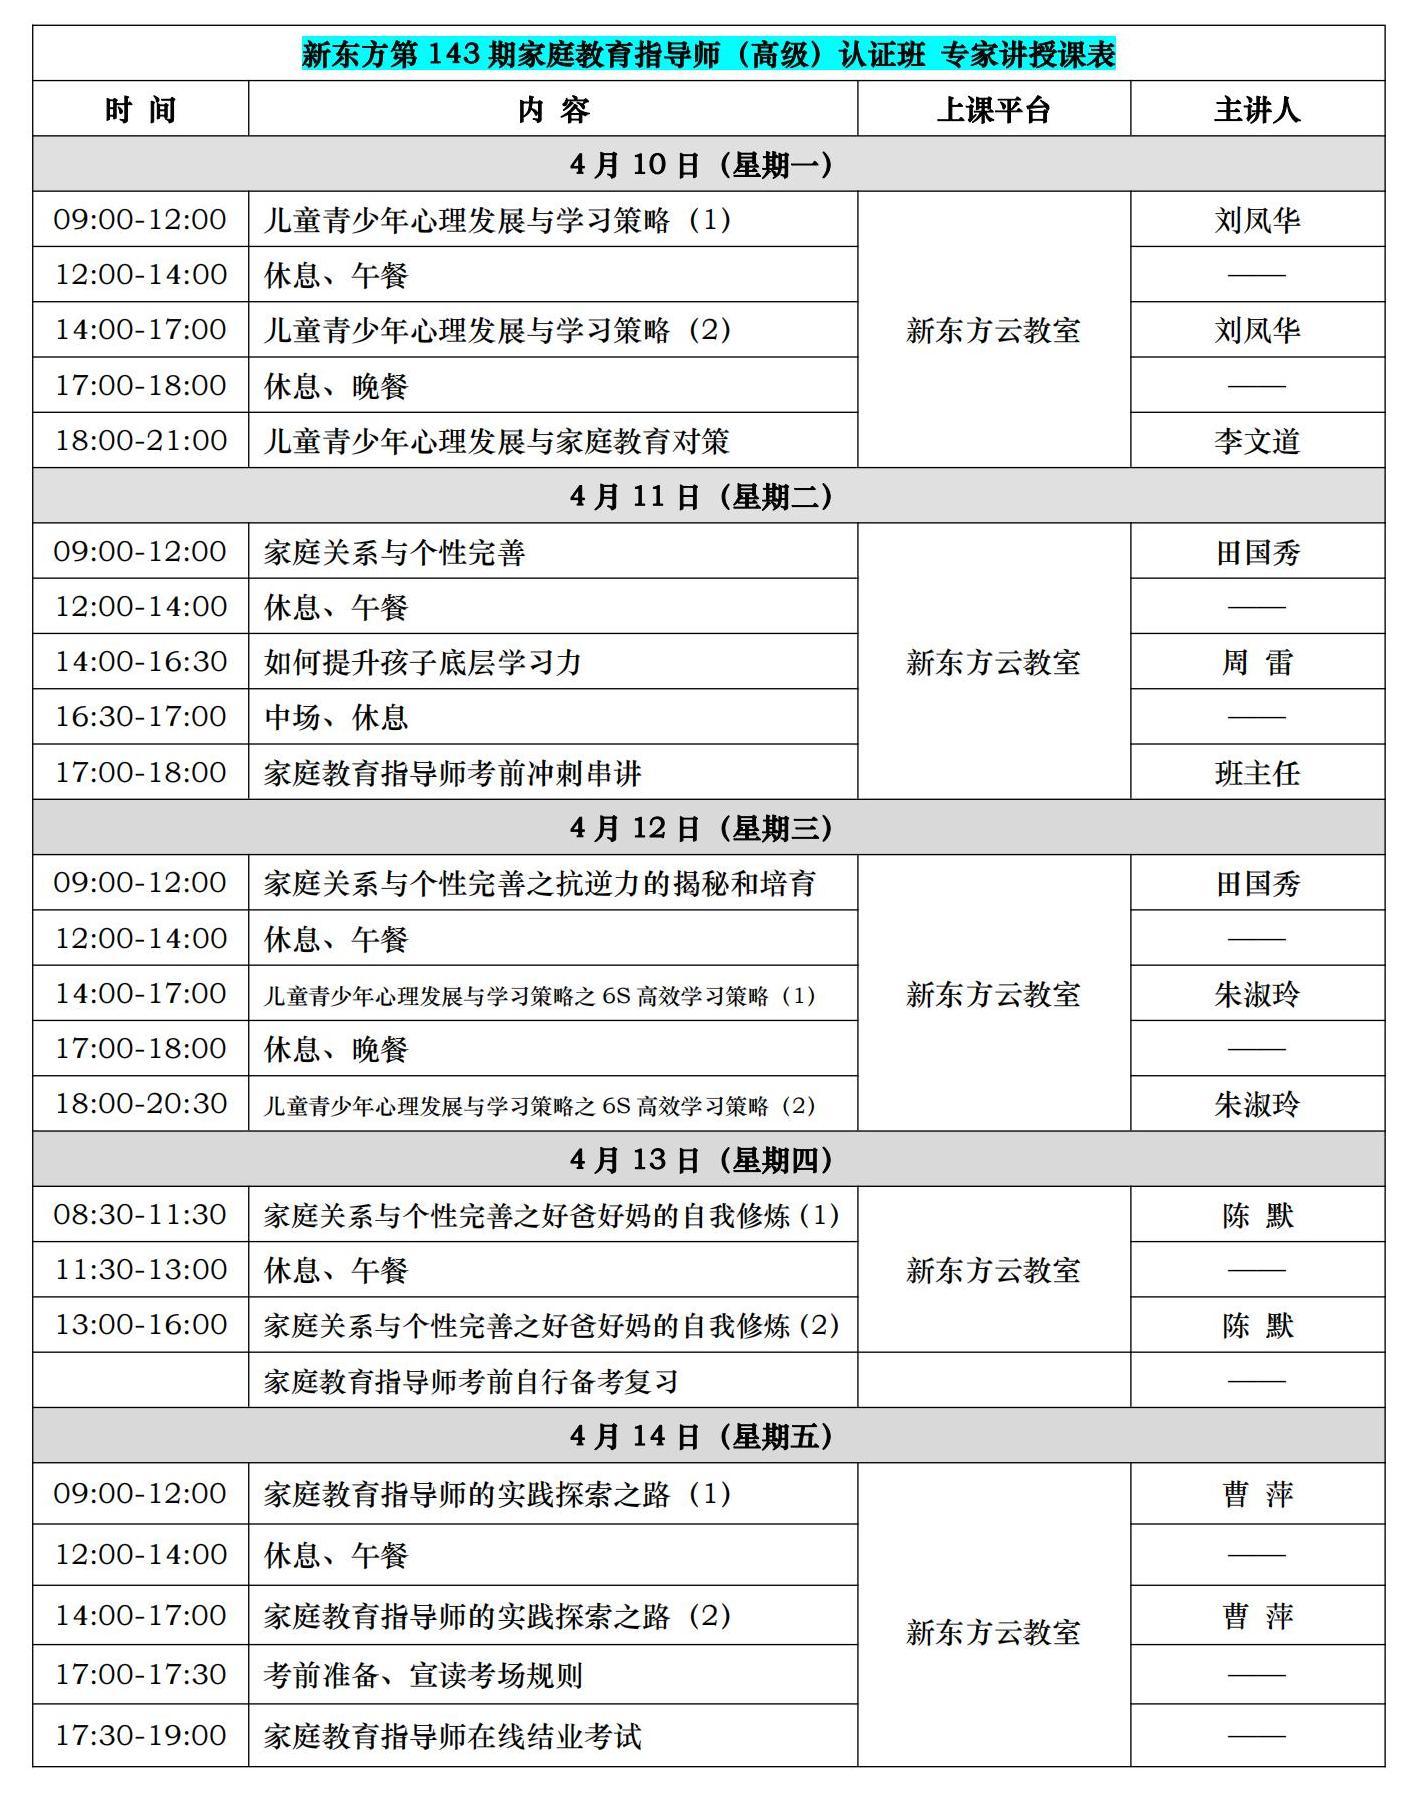 新东方第143期高级指导师认证培训(4月10日至14日）.jpg